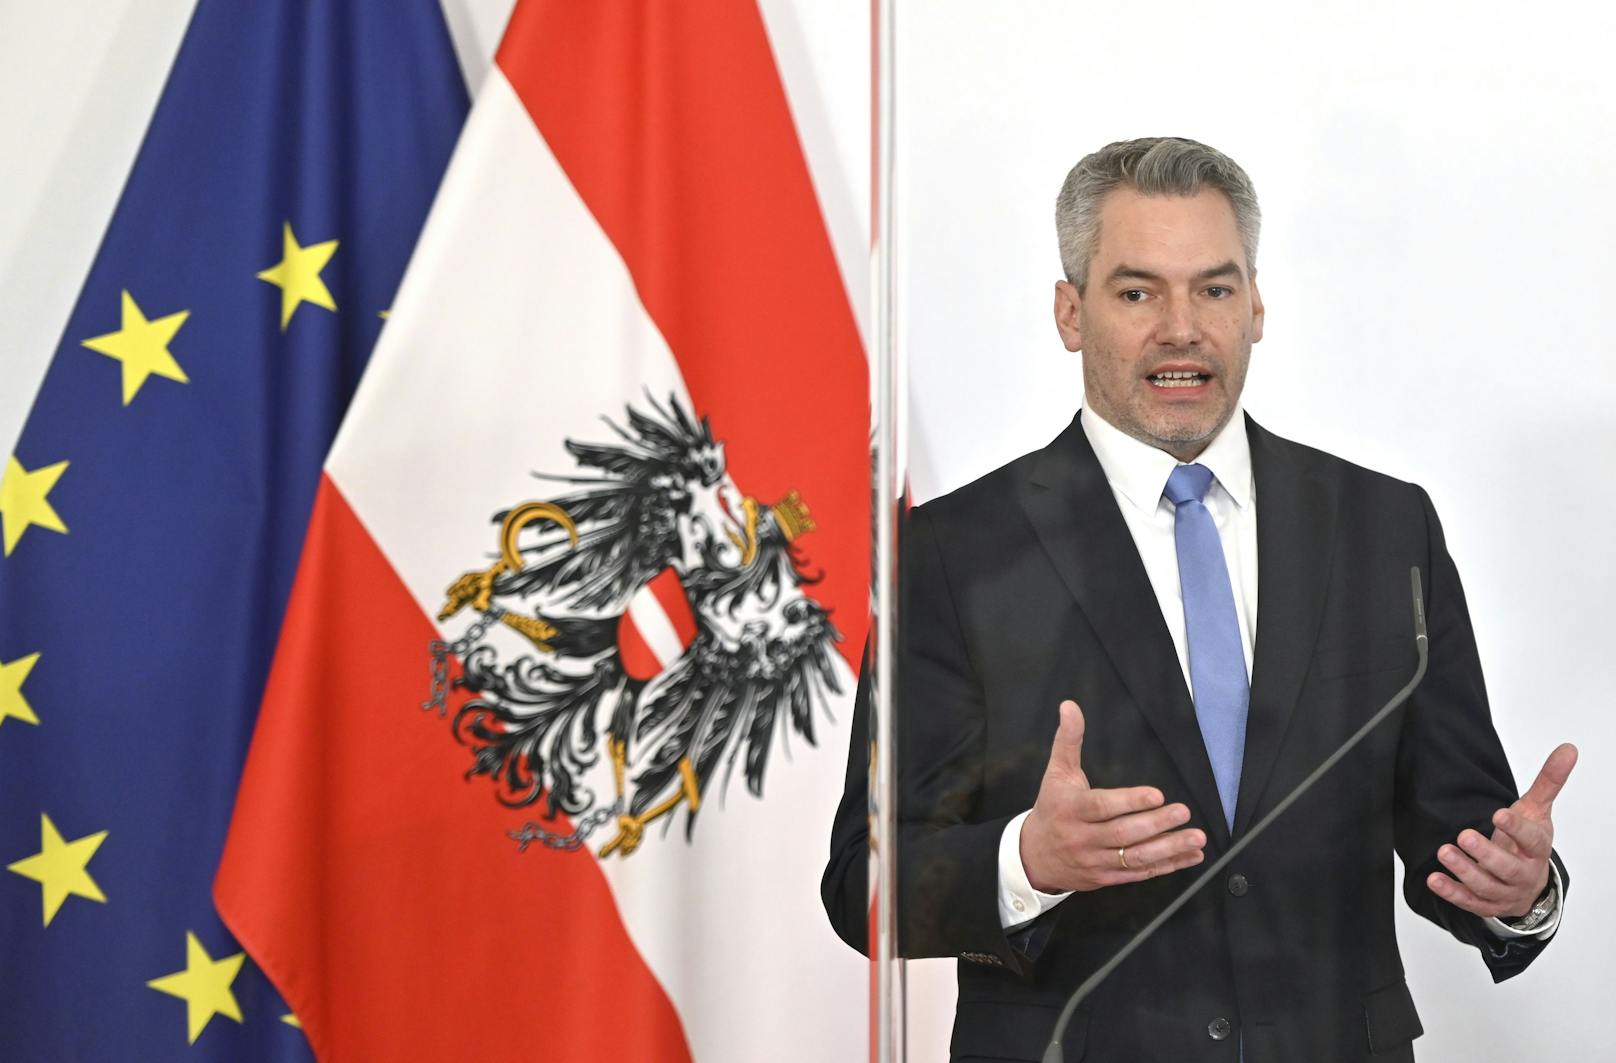 Regierung verhängt Reise-Testpflicht über Tirol: Bilder der Pressekonferenz am 9. Februar 2020